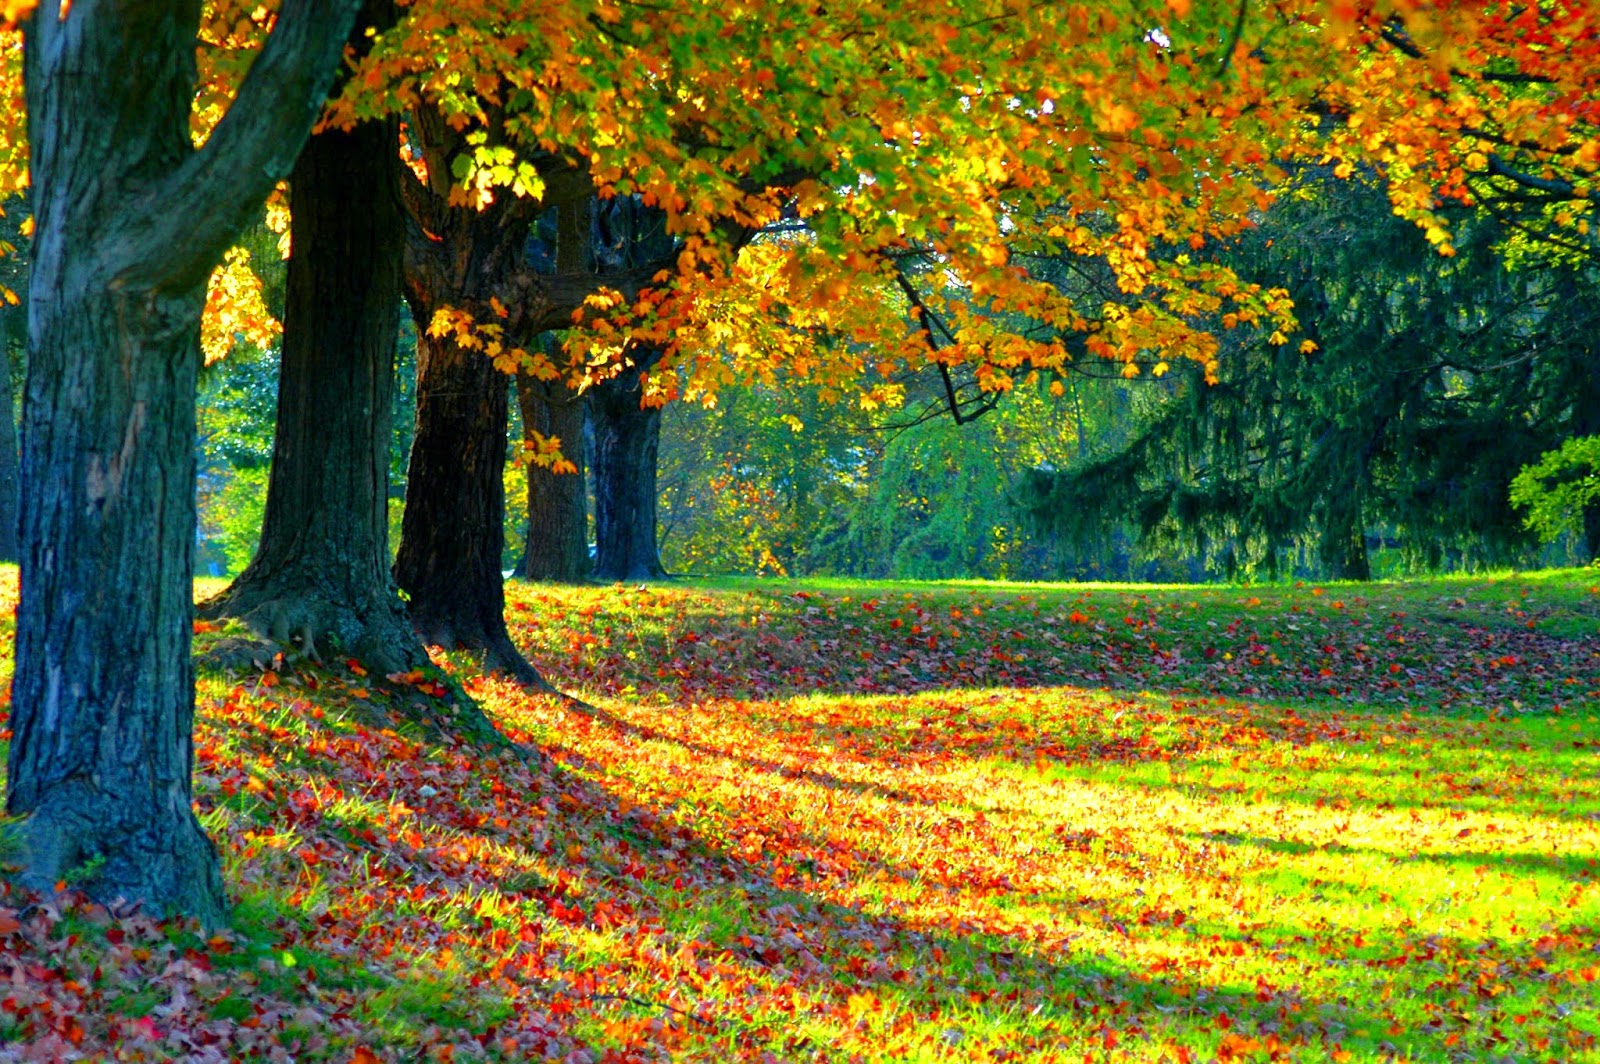 fromtheeditr: Gratutide: The Magic of Autumn